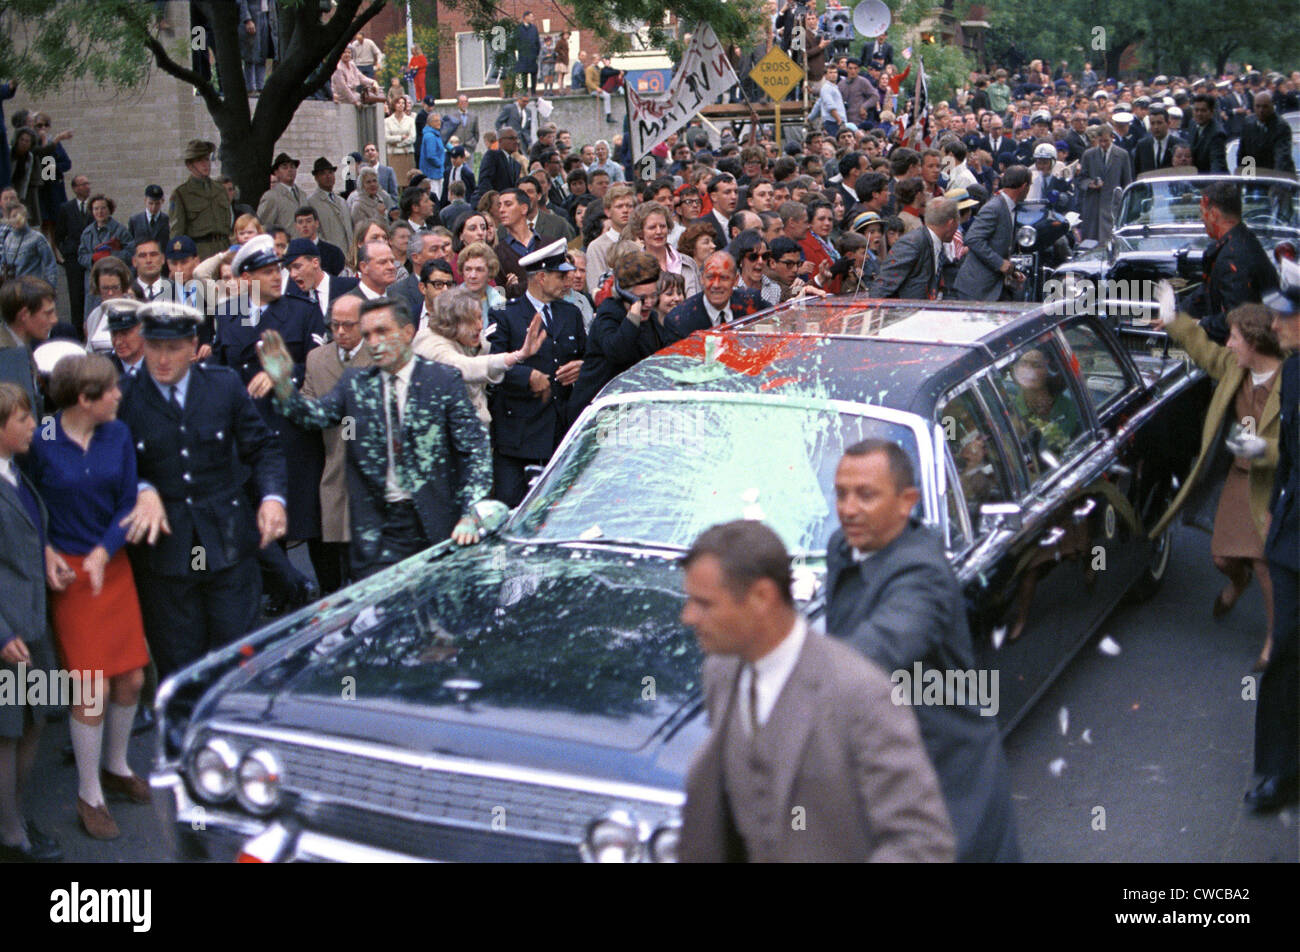 Défilé du Président Lyndon Johnson attaqué par des manifestants contre la guerre du Vietnam à Melbourne, Australie. Manifestants ont lancé la peinture Banque D'Images